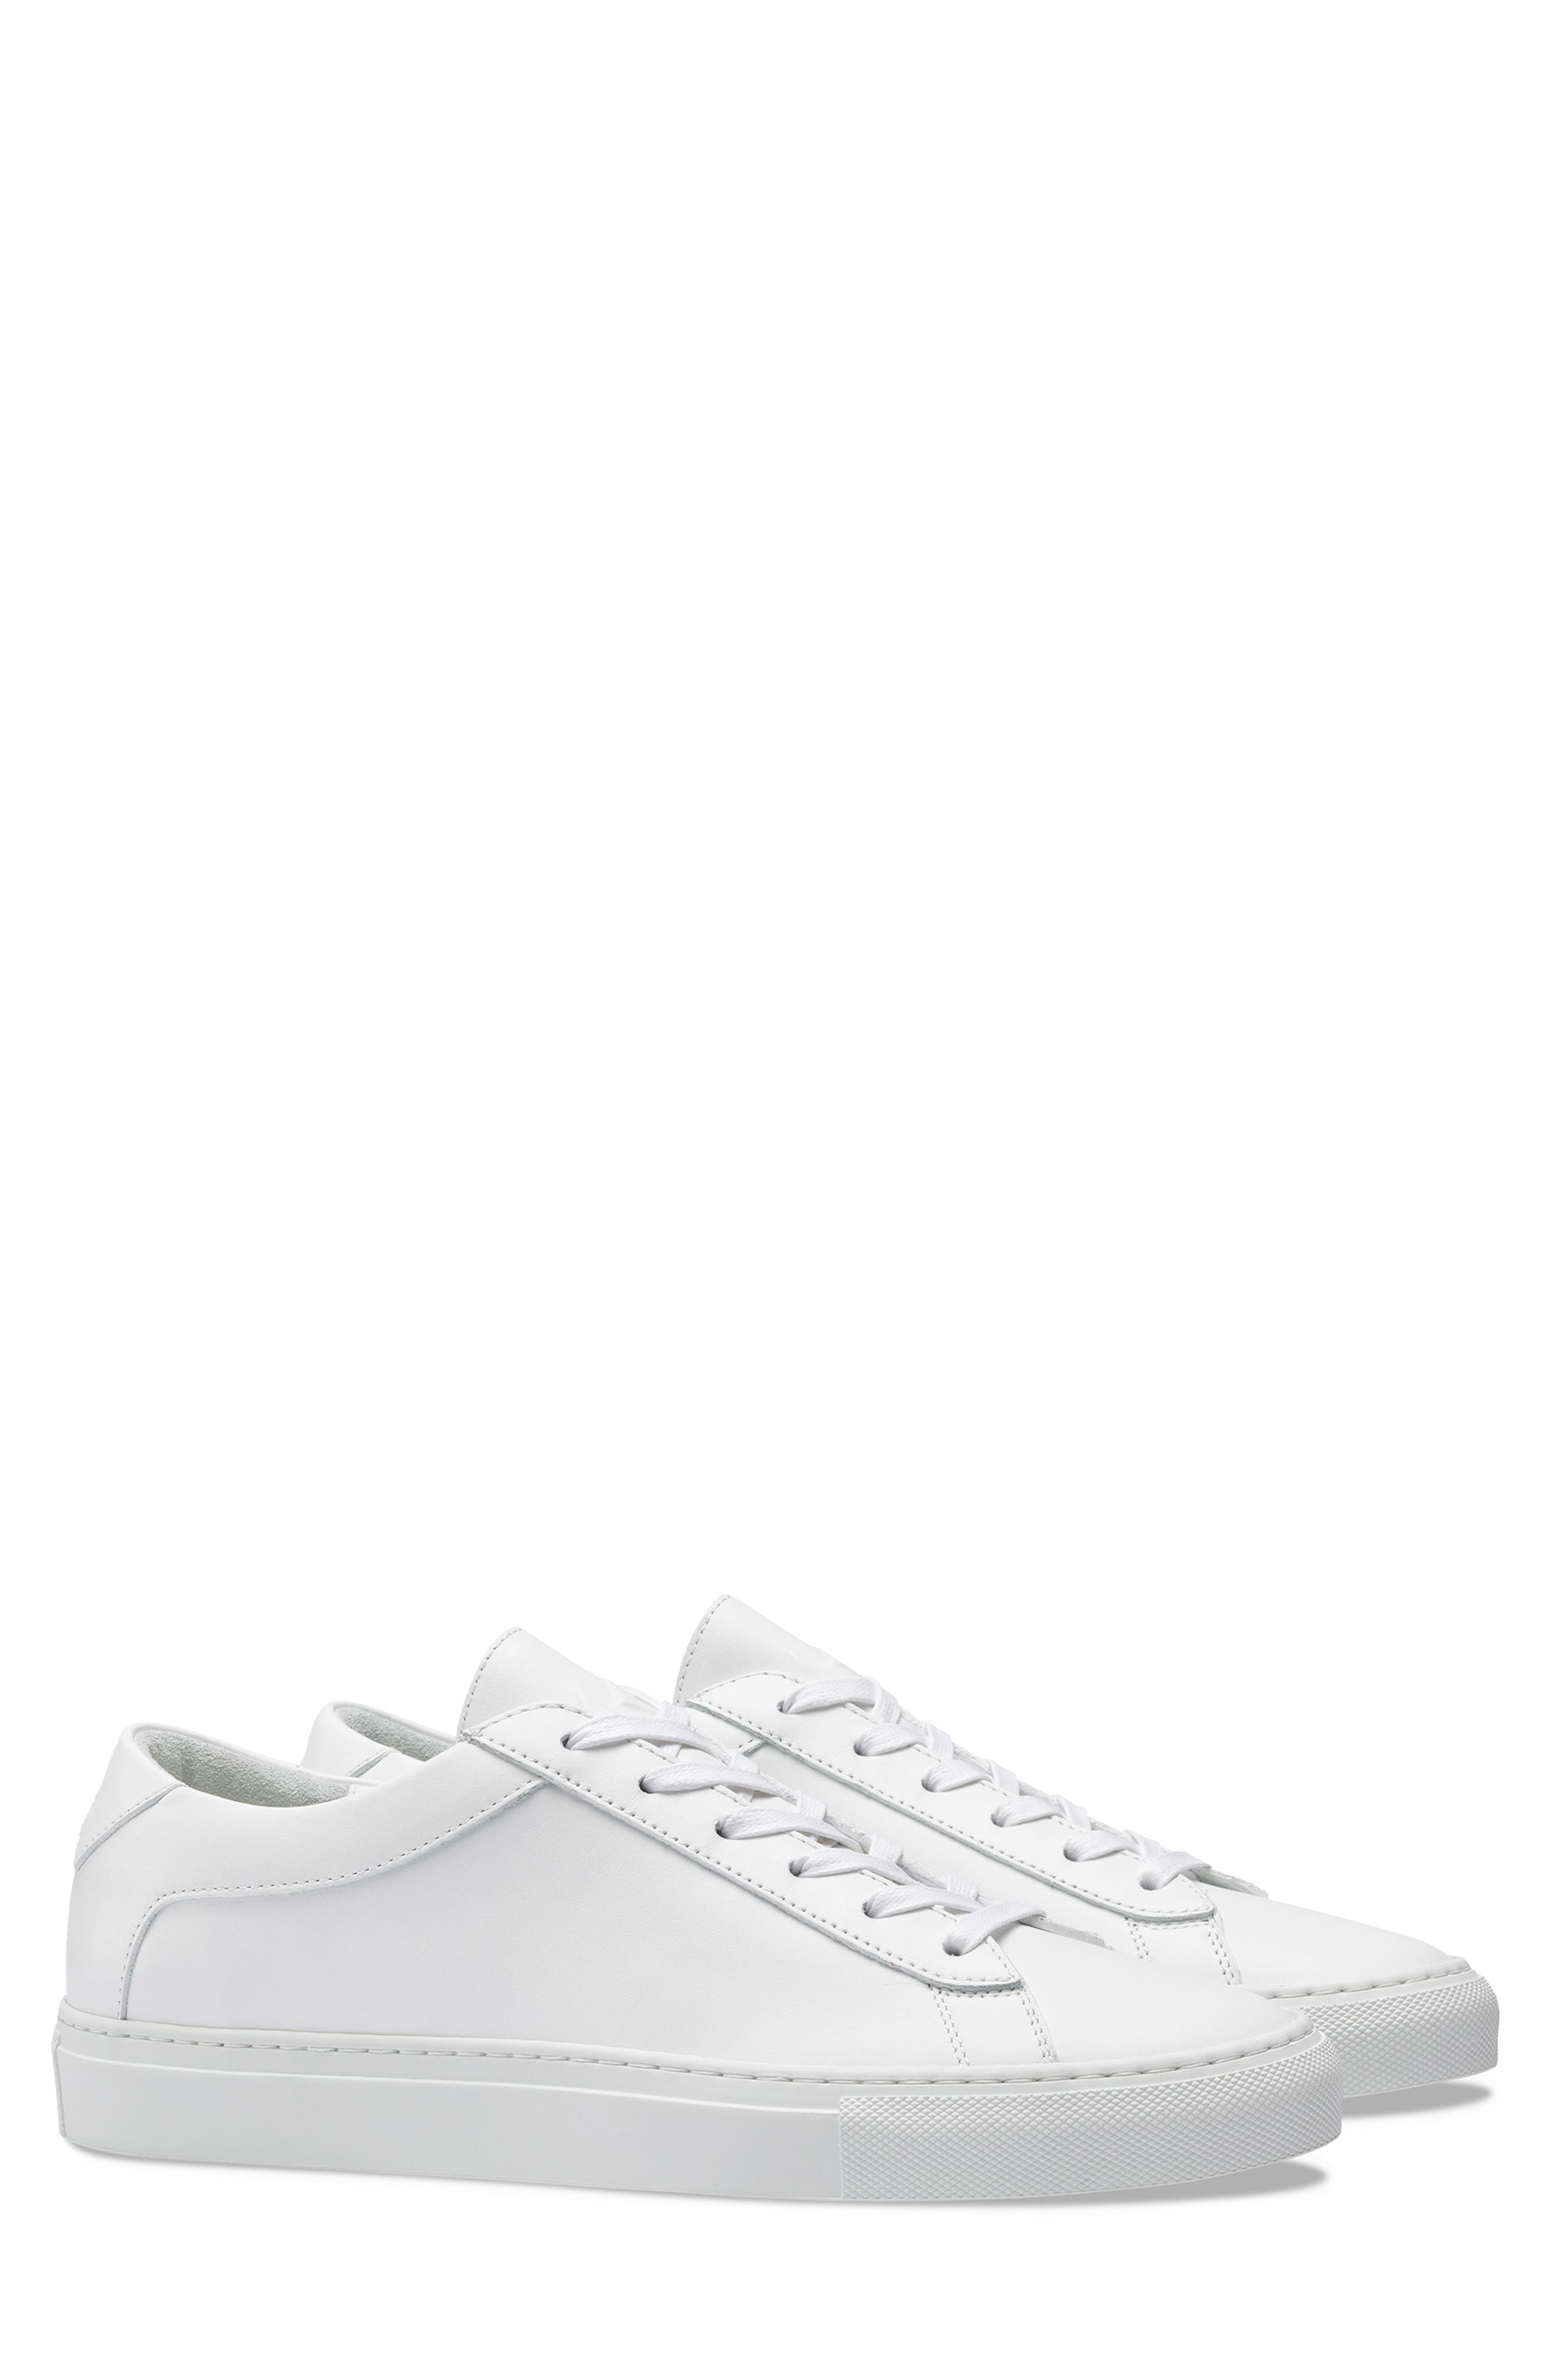 Koio Capri Sneaker In Triple White 